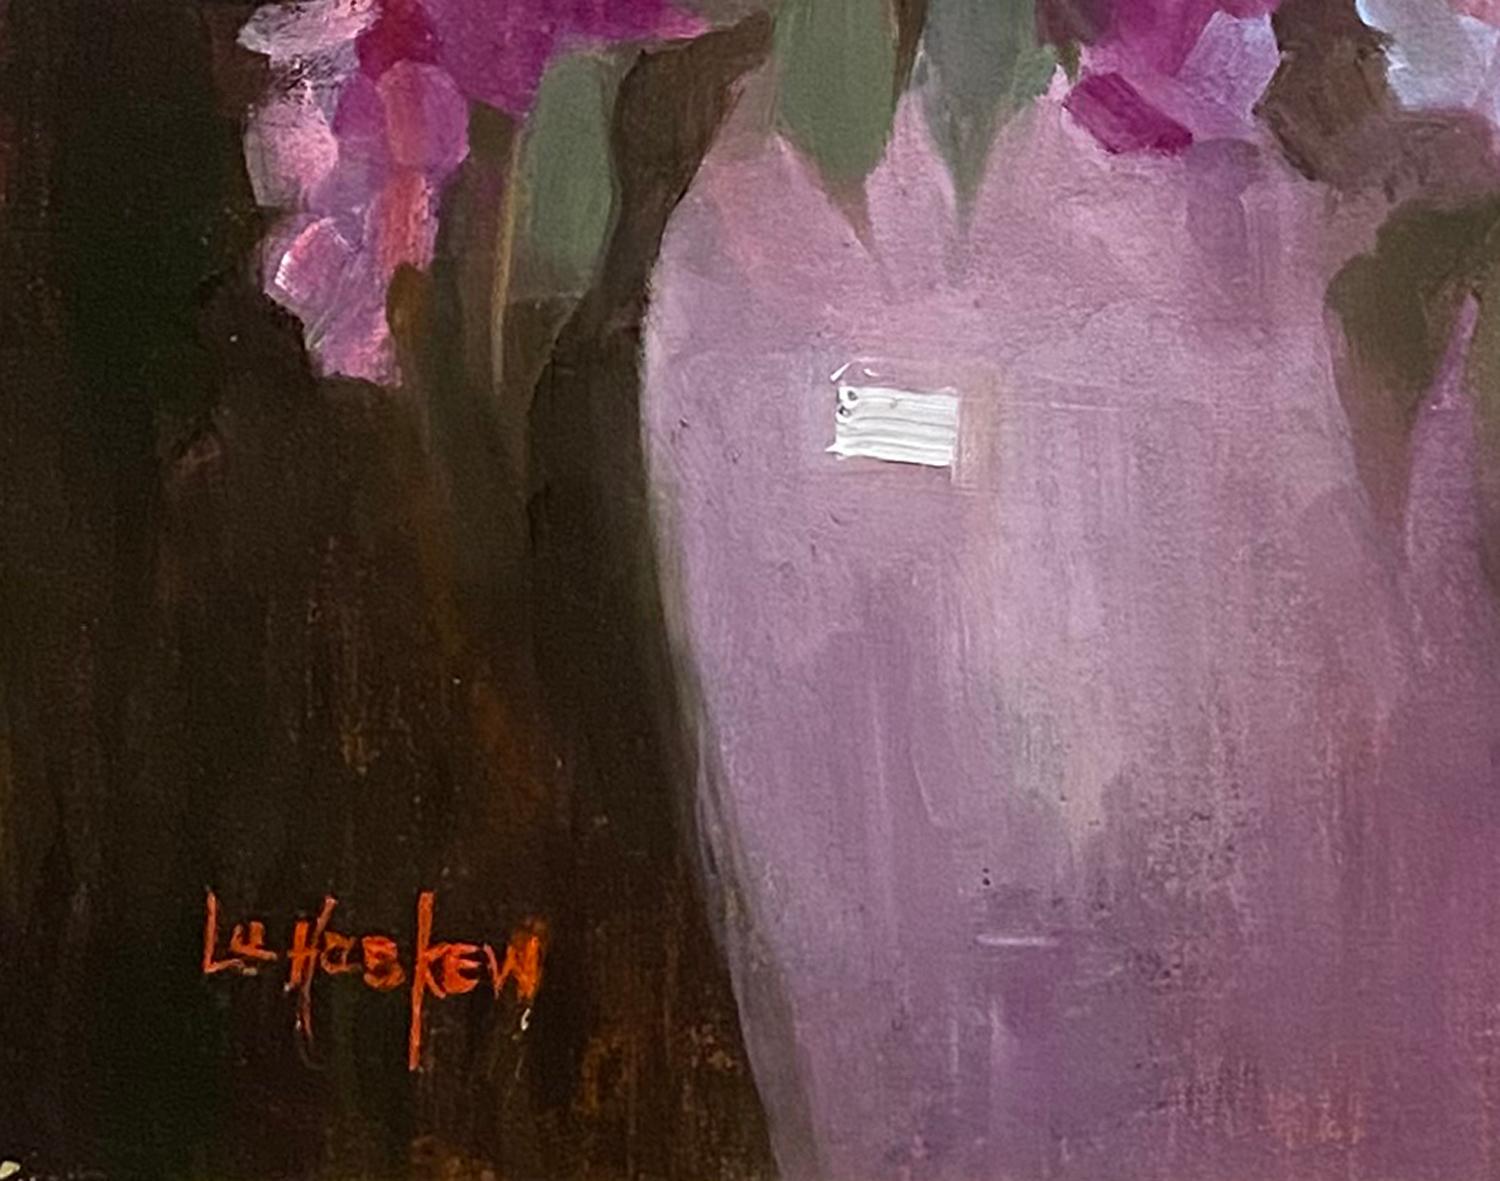 Eine Fülle von Blütenblättern (Amerikanischer Impressionismus), Painting, von Lu Haskew